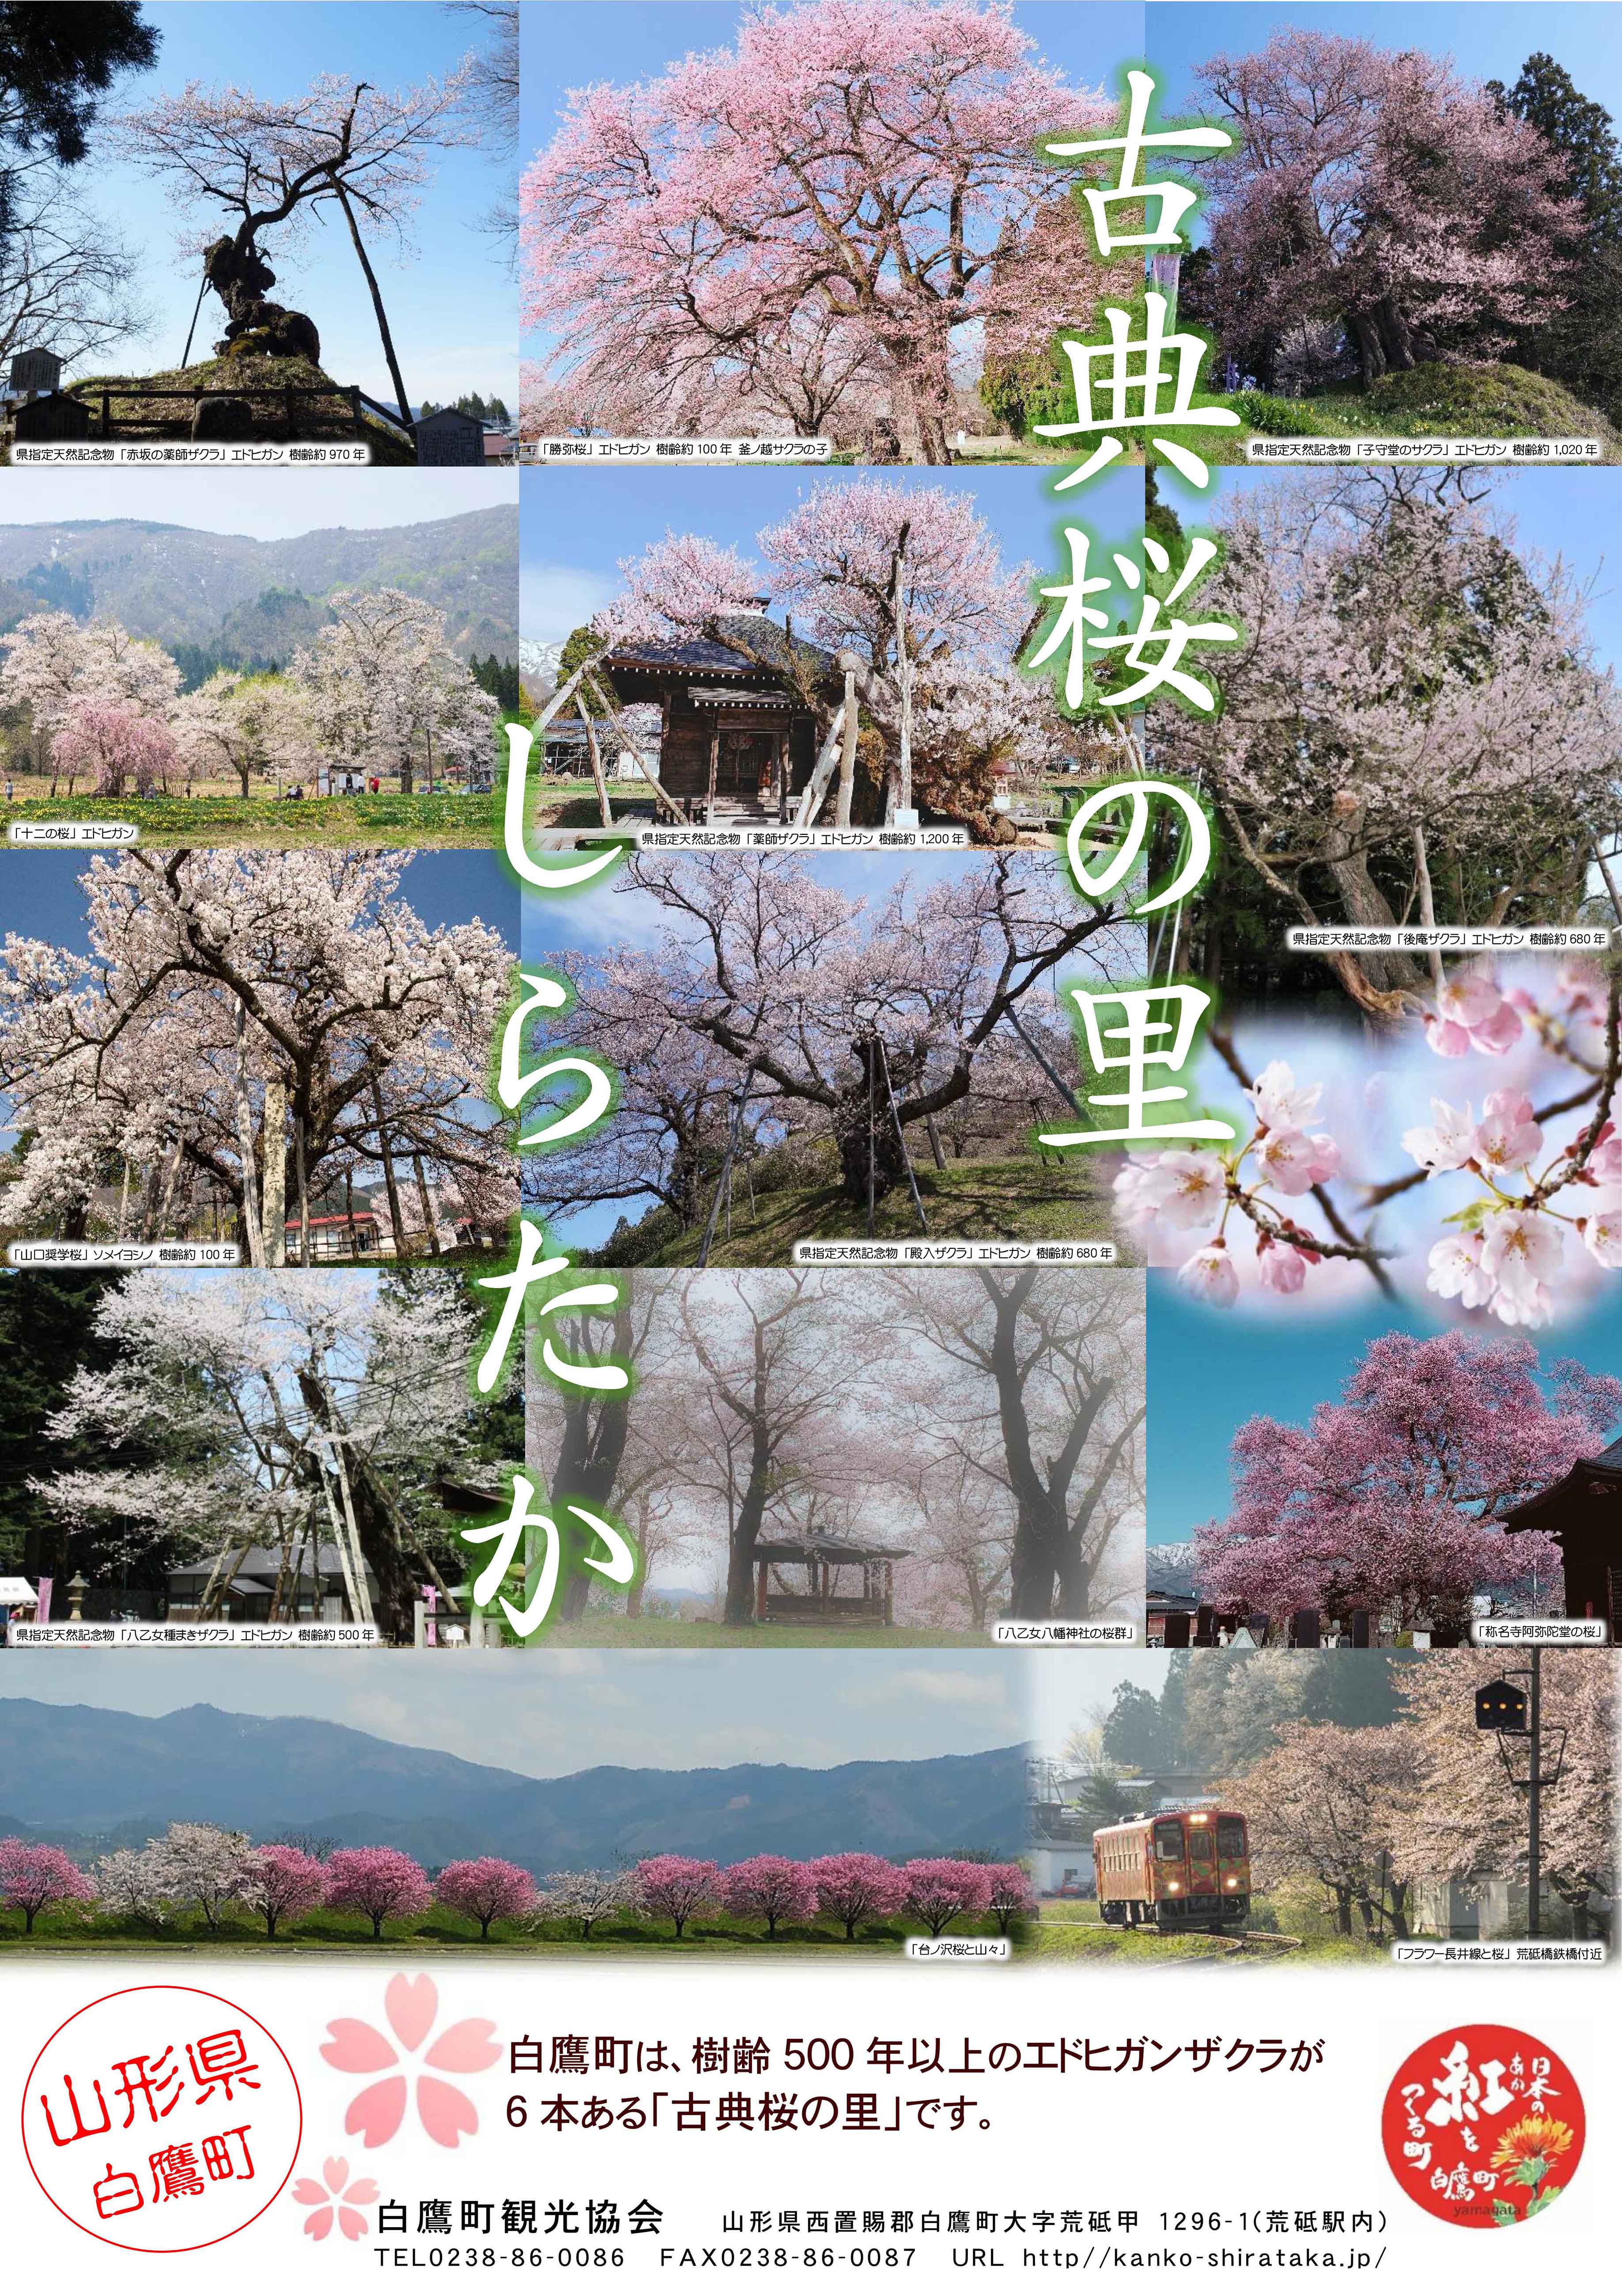 「古典桜の里しらたか」ポスターが出来ました